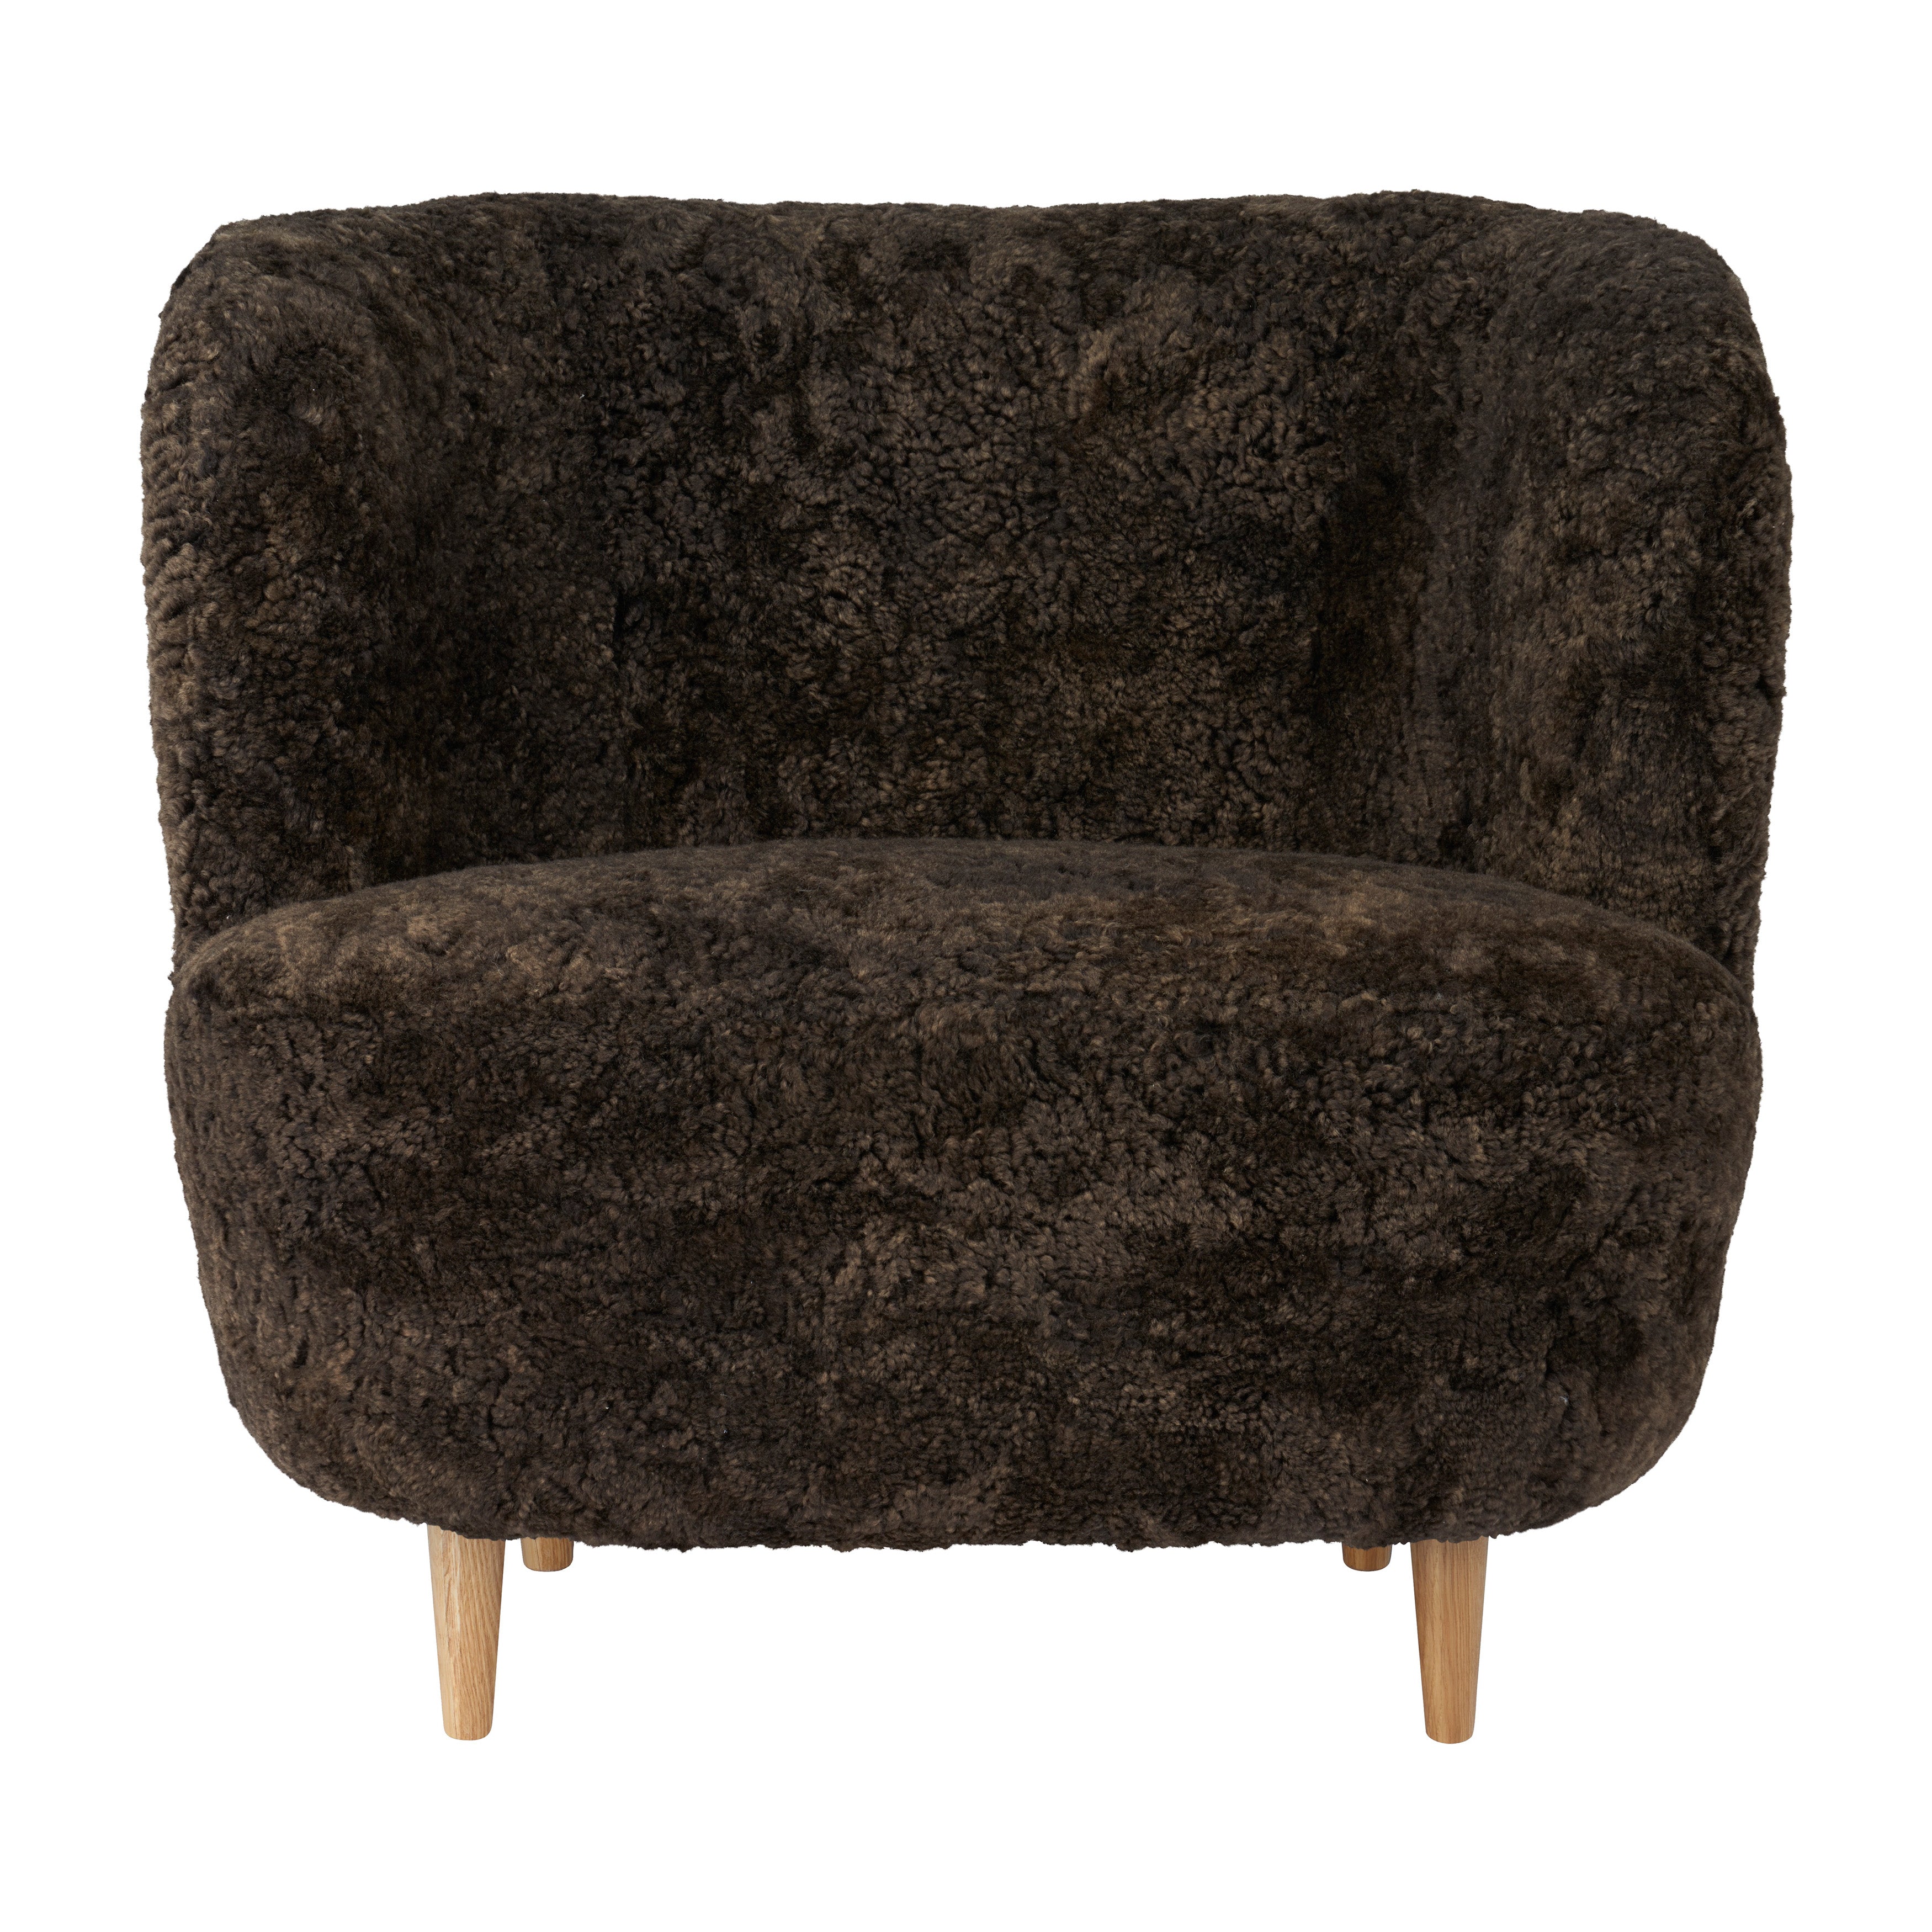 Stay Lounge Chair Large: Wood Base + Semi Matt Lacquered Oak